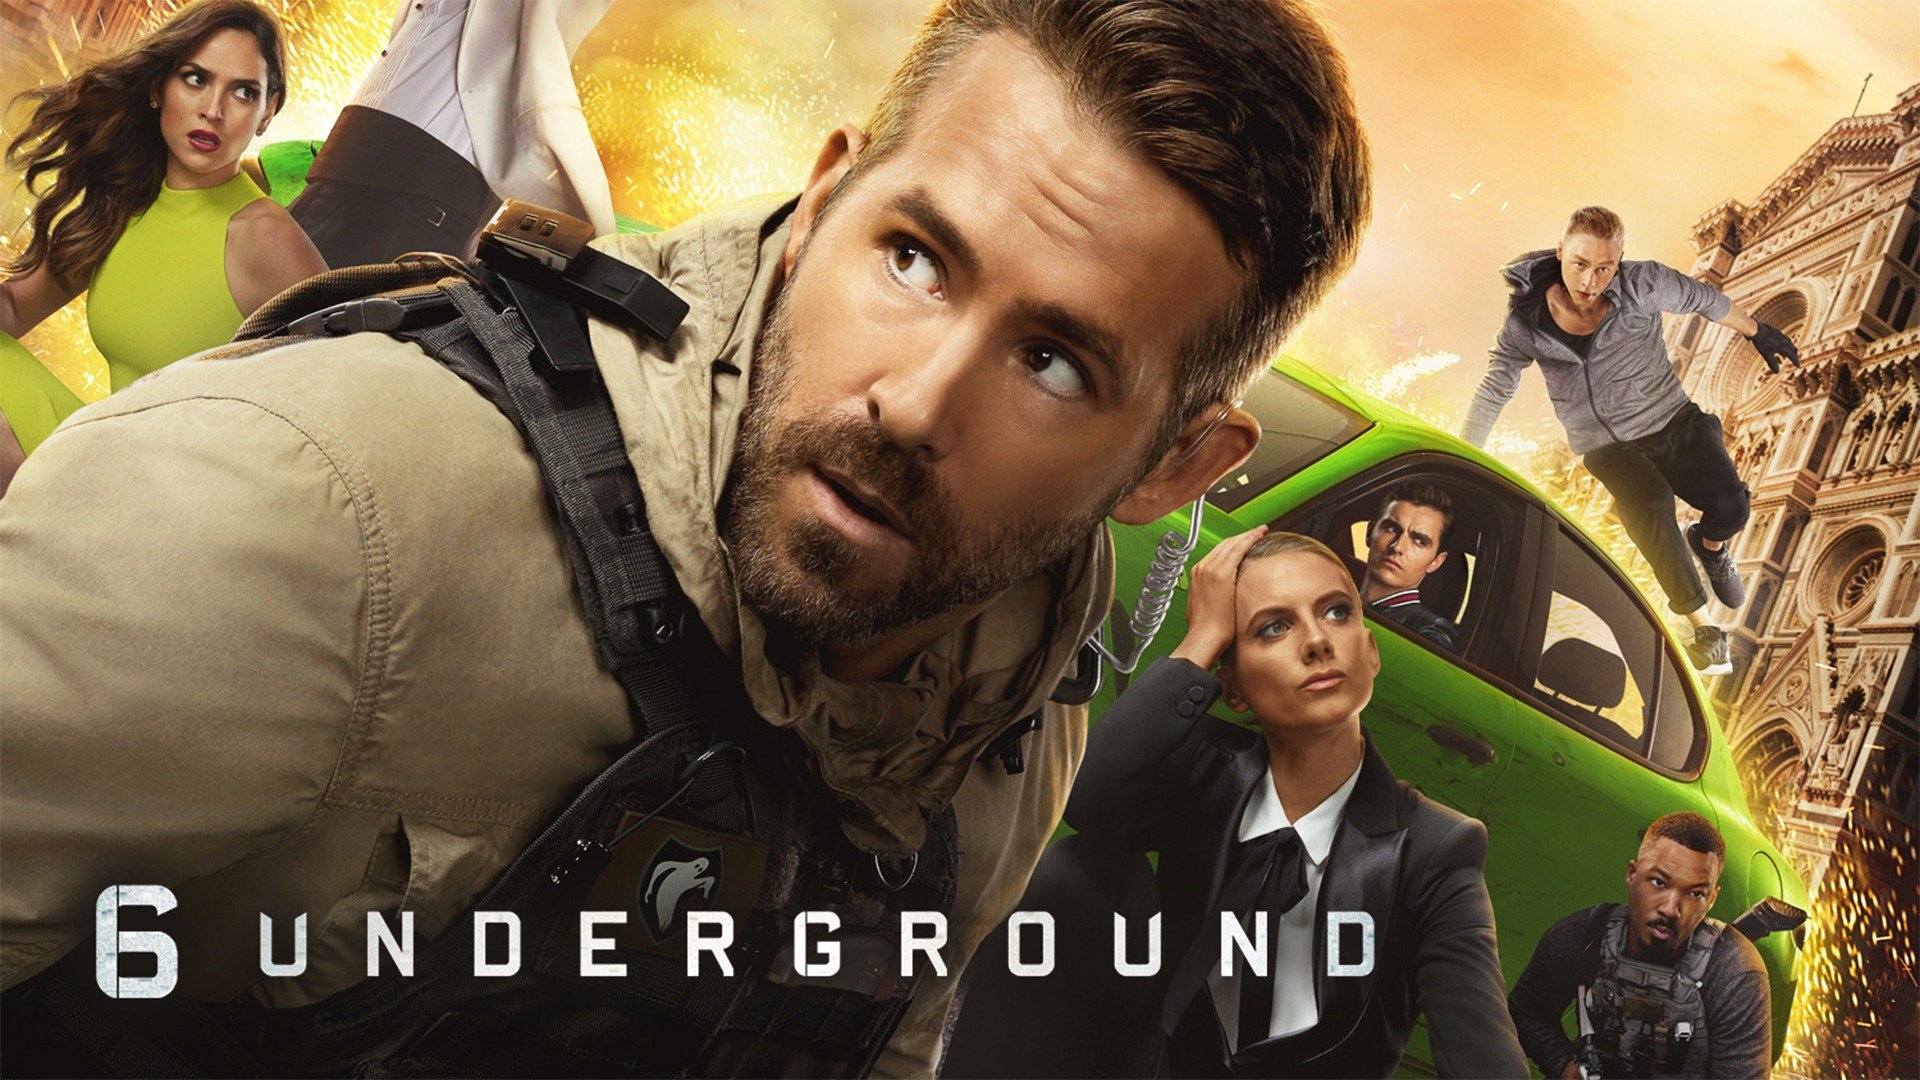 6 Underground - Netflix Movie - Where To Watch